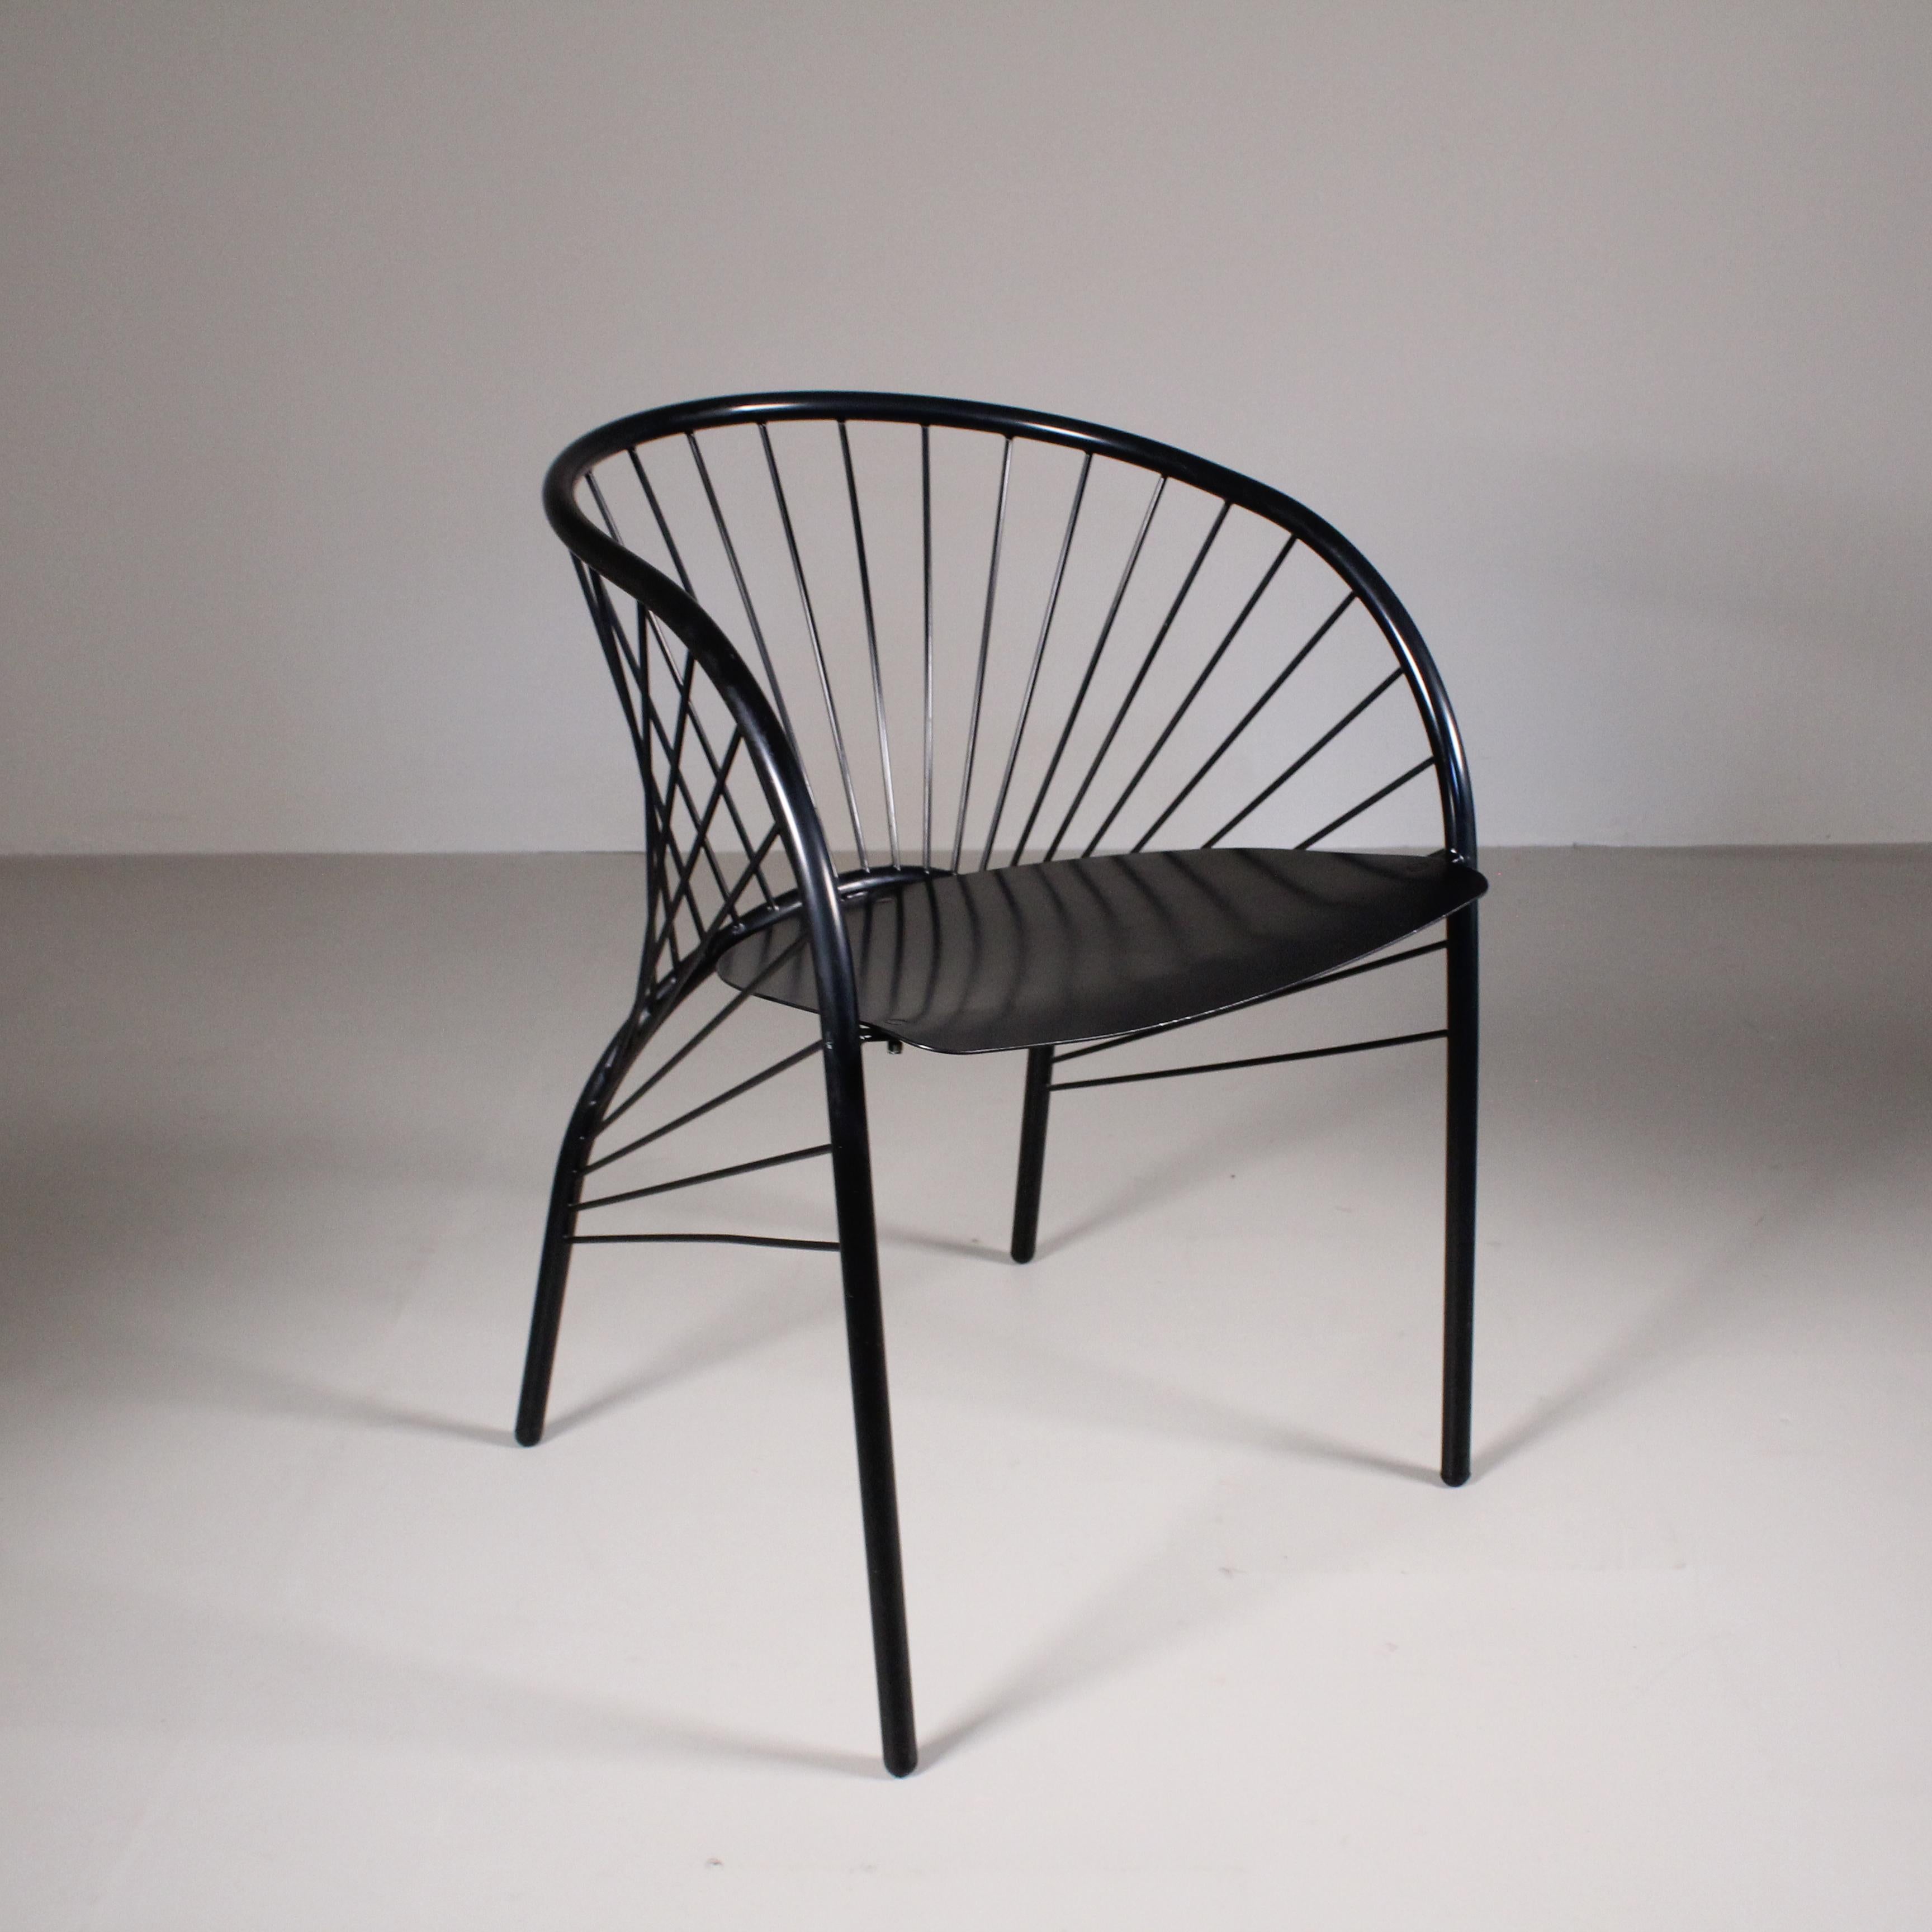 La sedia Lizzie, progettata da Regis Portier per Pallucco, è un’icona del design contemporaneo. Caratterizzata da linee pulite e forme moderne, questa sedia si distingue per la sua semplicità ed eleganza. La sedia Lizzie si distingue per la sua